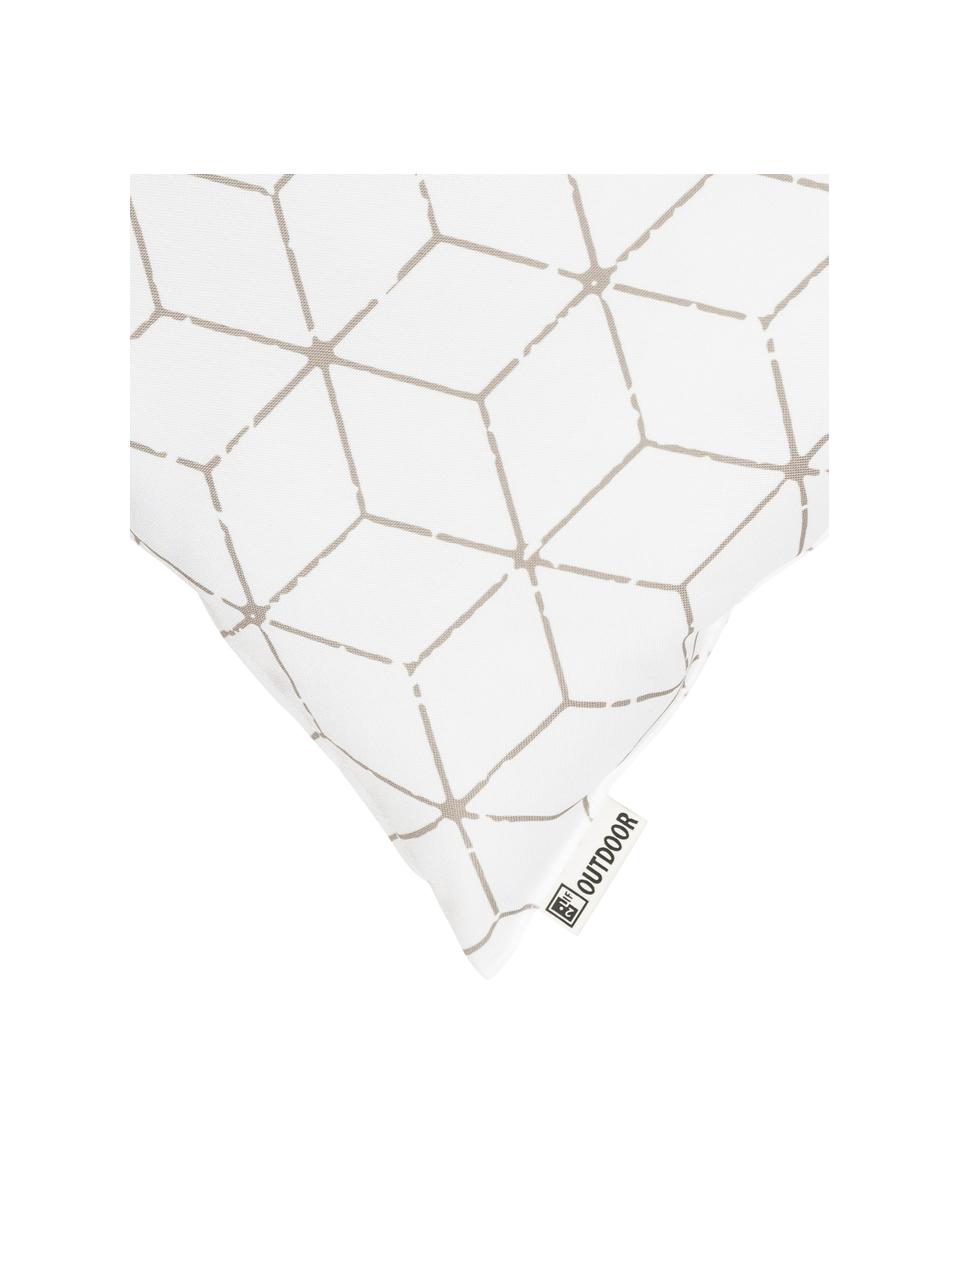 Poduszka zewnętrzna z wypełnieniem Cube, 100% poliester, Biały, beżowy, S 47 x D 47 cm